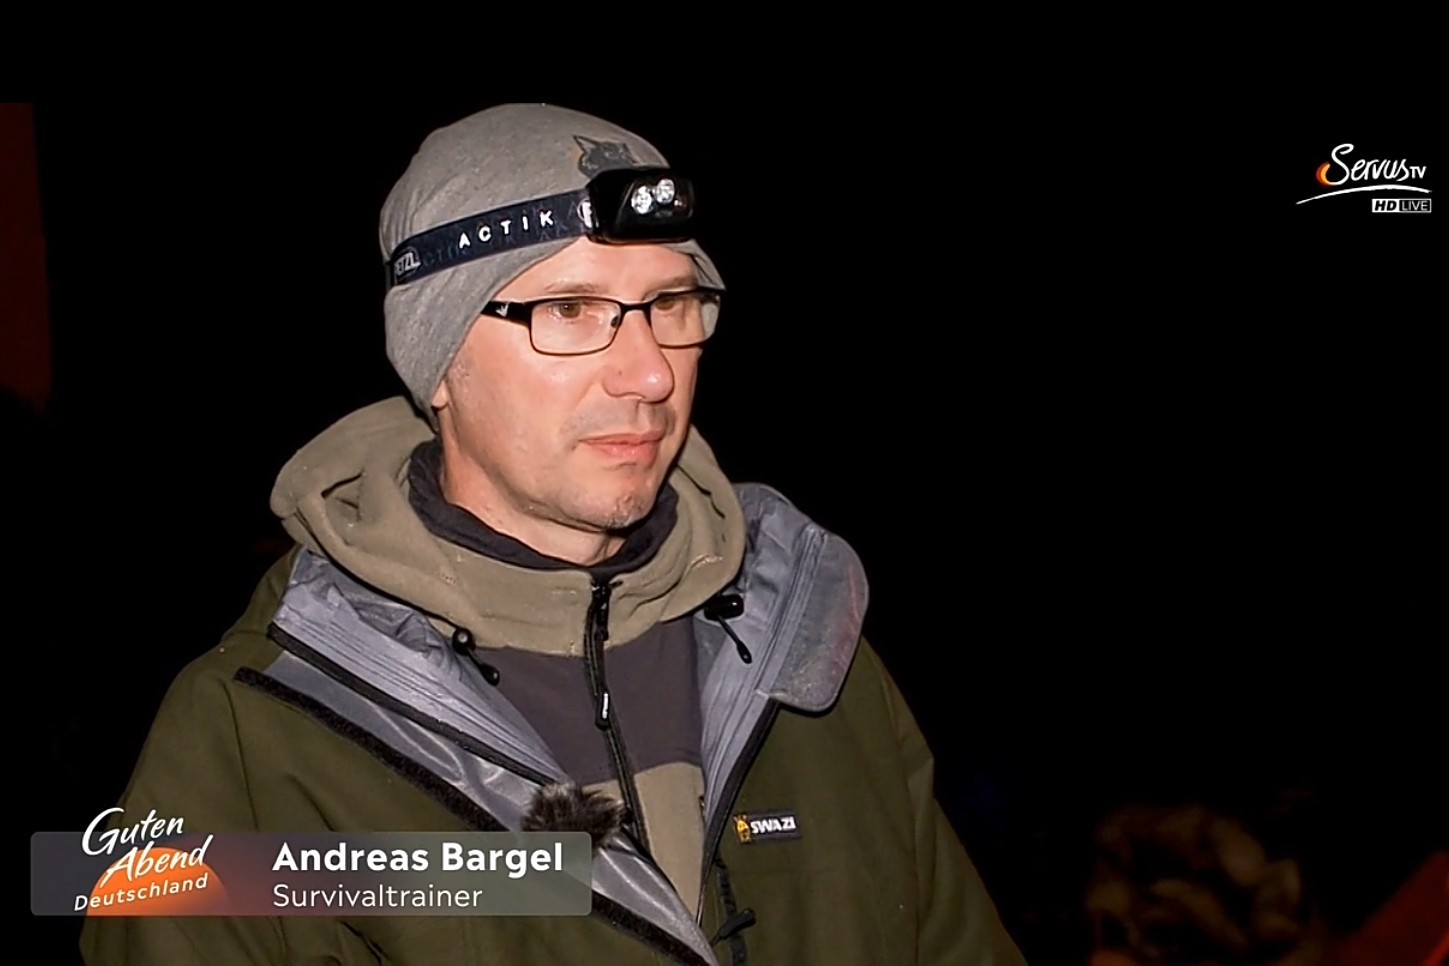 alt=“Andreas Bargel im Zuge einer Blackout Reportage bei Servus TV in einem nächtlichen Wald ″